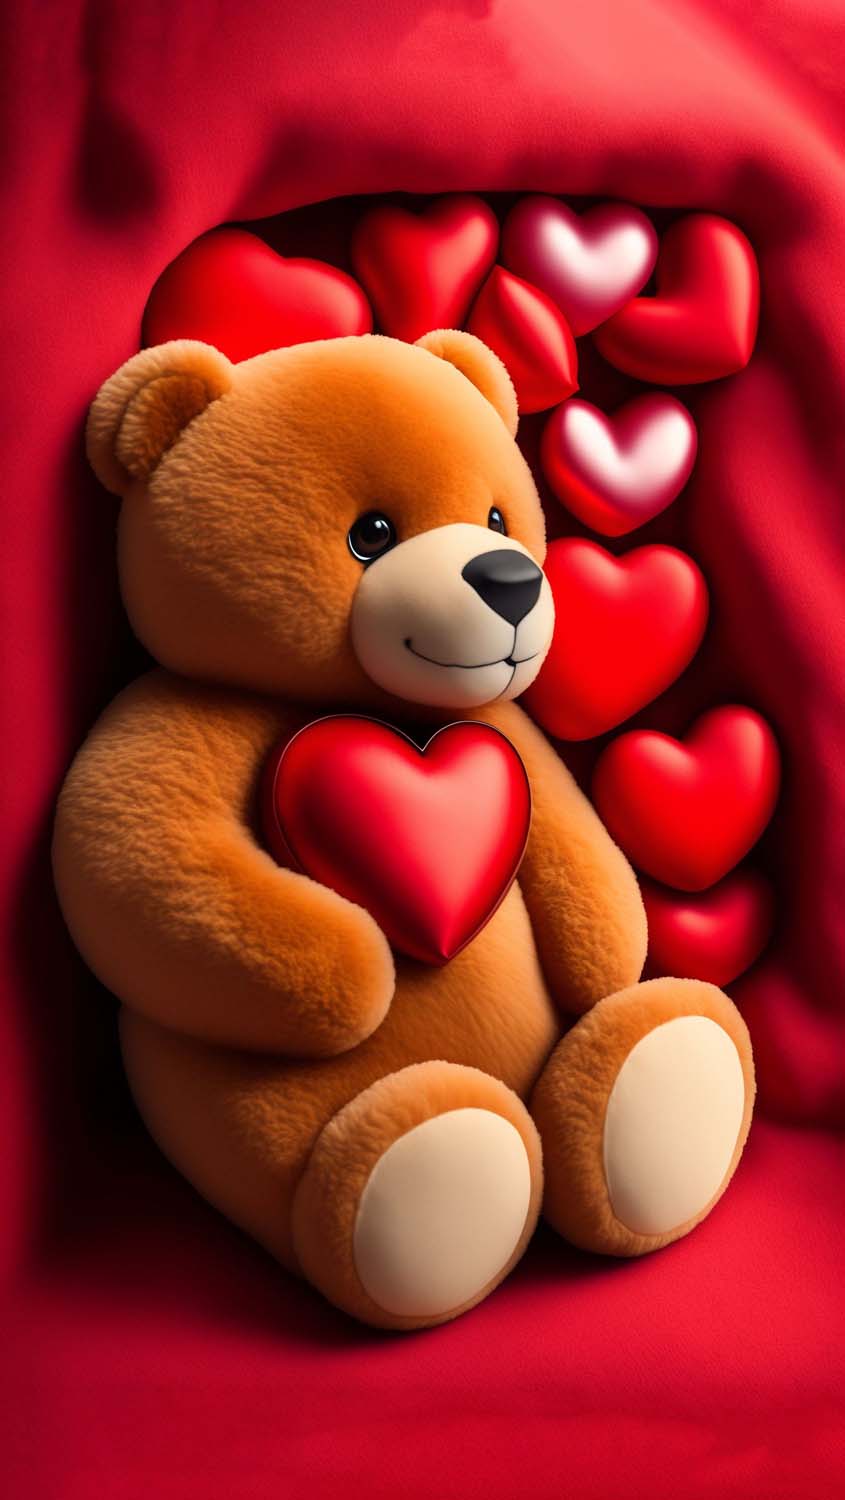 Teddy Heart IPhone Wallpaper HD Wallpaper, iPhone Wallpaper